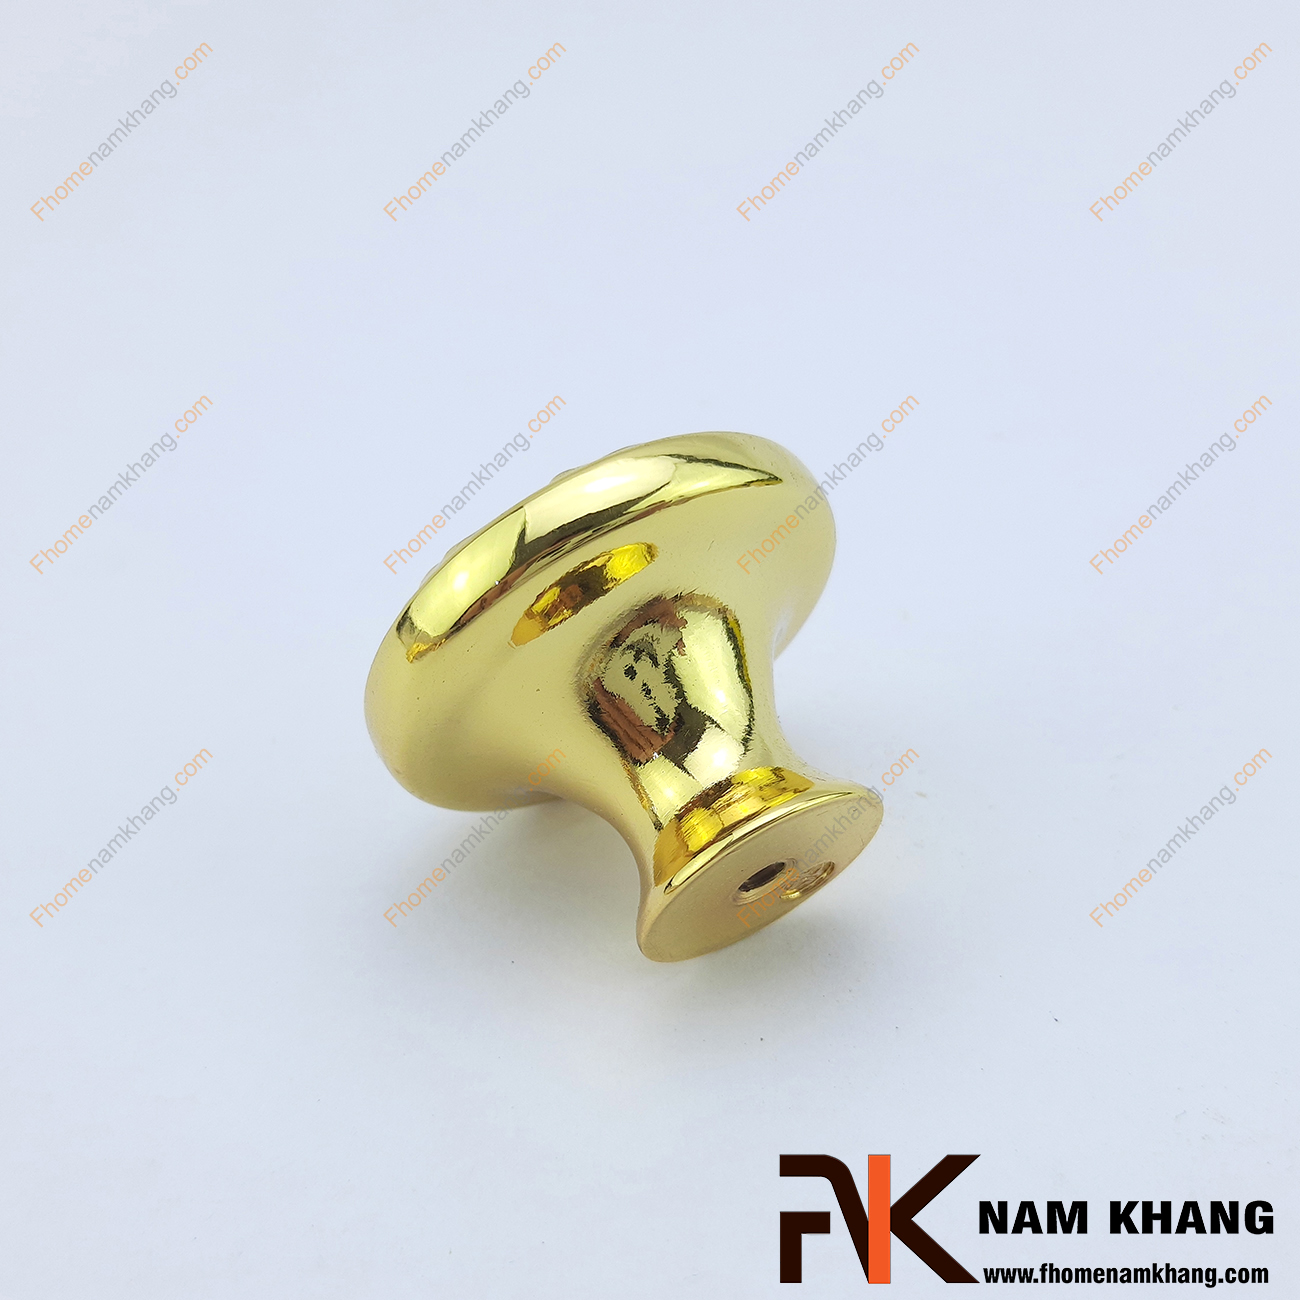 Núm tay nắm tủ mạ vàng NK084-V là một thiết kế phụ kiện tủ kệ cao cấp được chế tạo từ chất liệu hợp kim. NK084 có nét đẹp thu hút ánh nhìn của bất kì nhà thiết kế nào